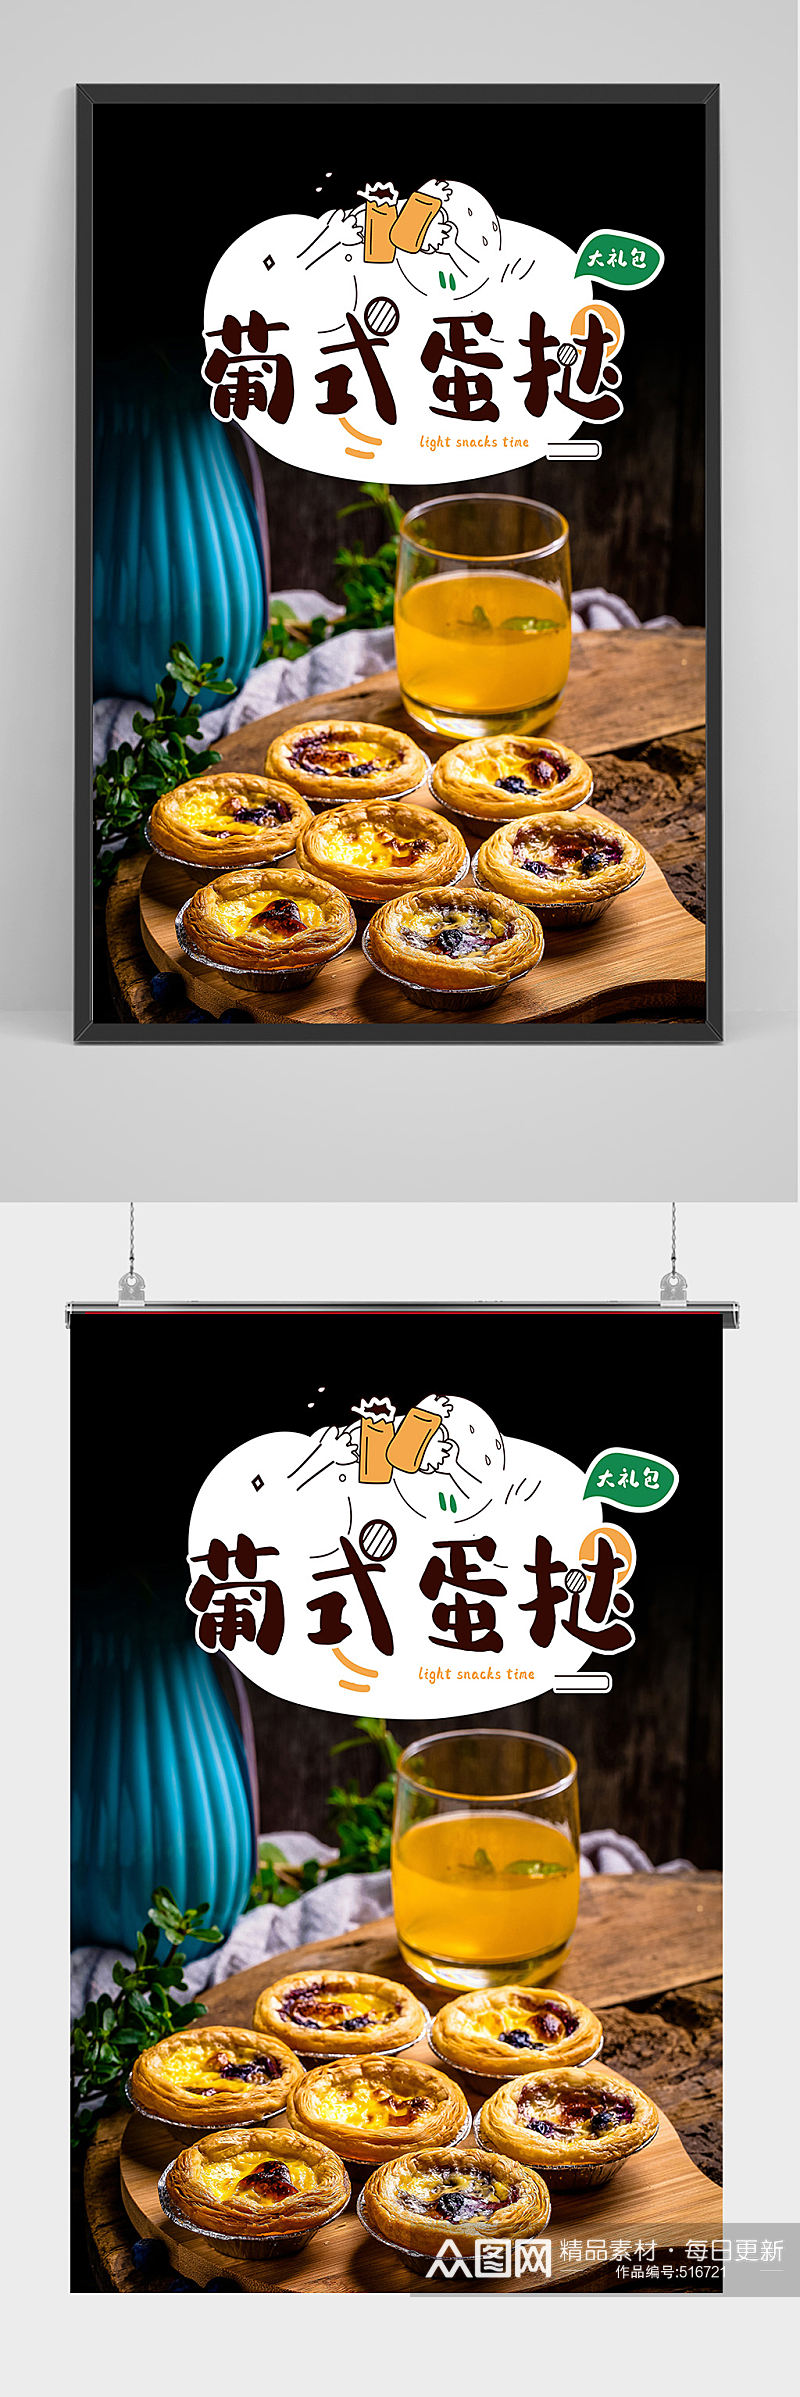 简洁大气葡式蛋挞海报设计素材